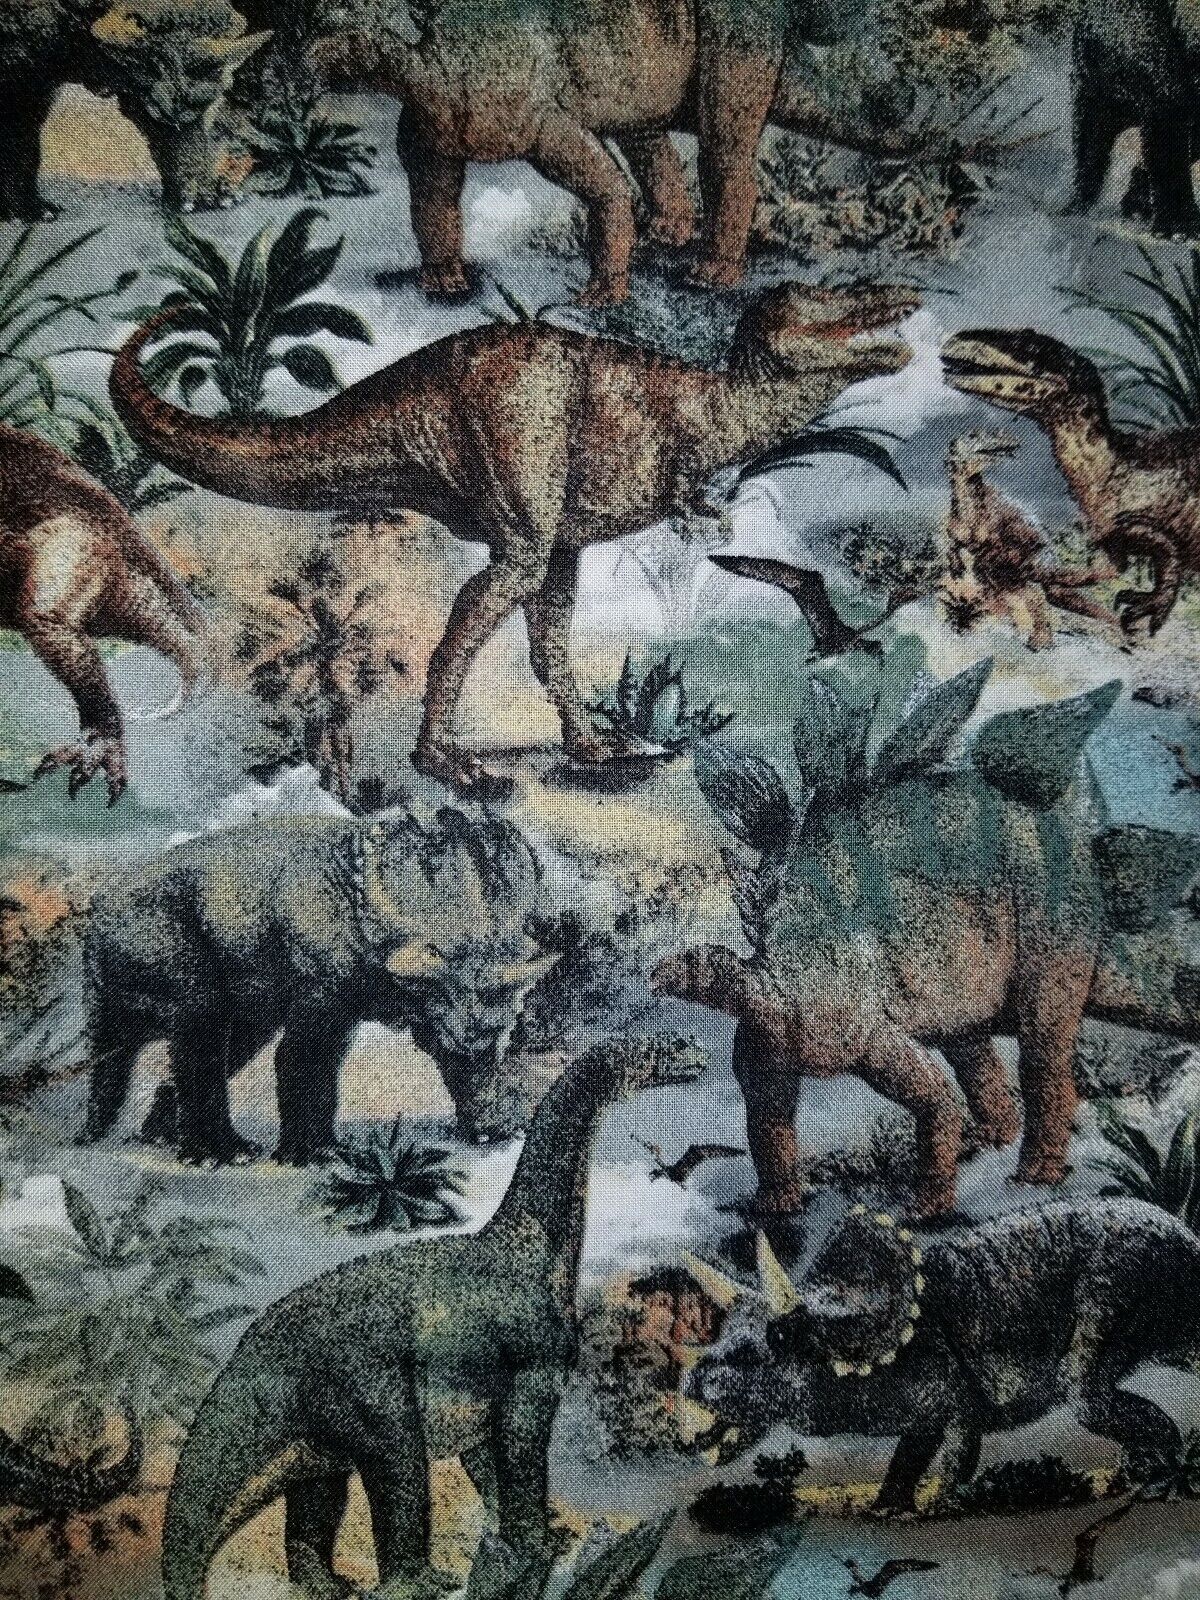 Dinosaurs Curtain Valance - Jurassic Theme